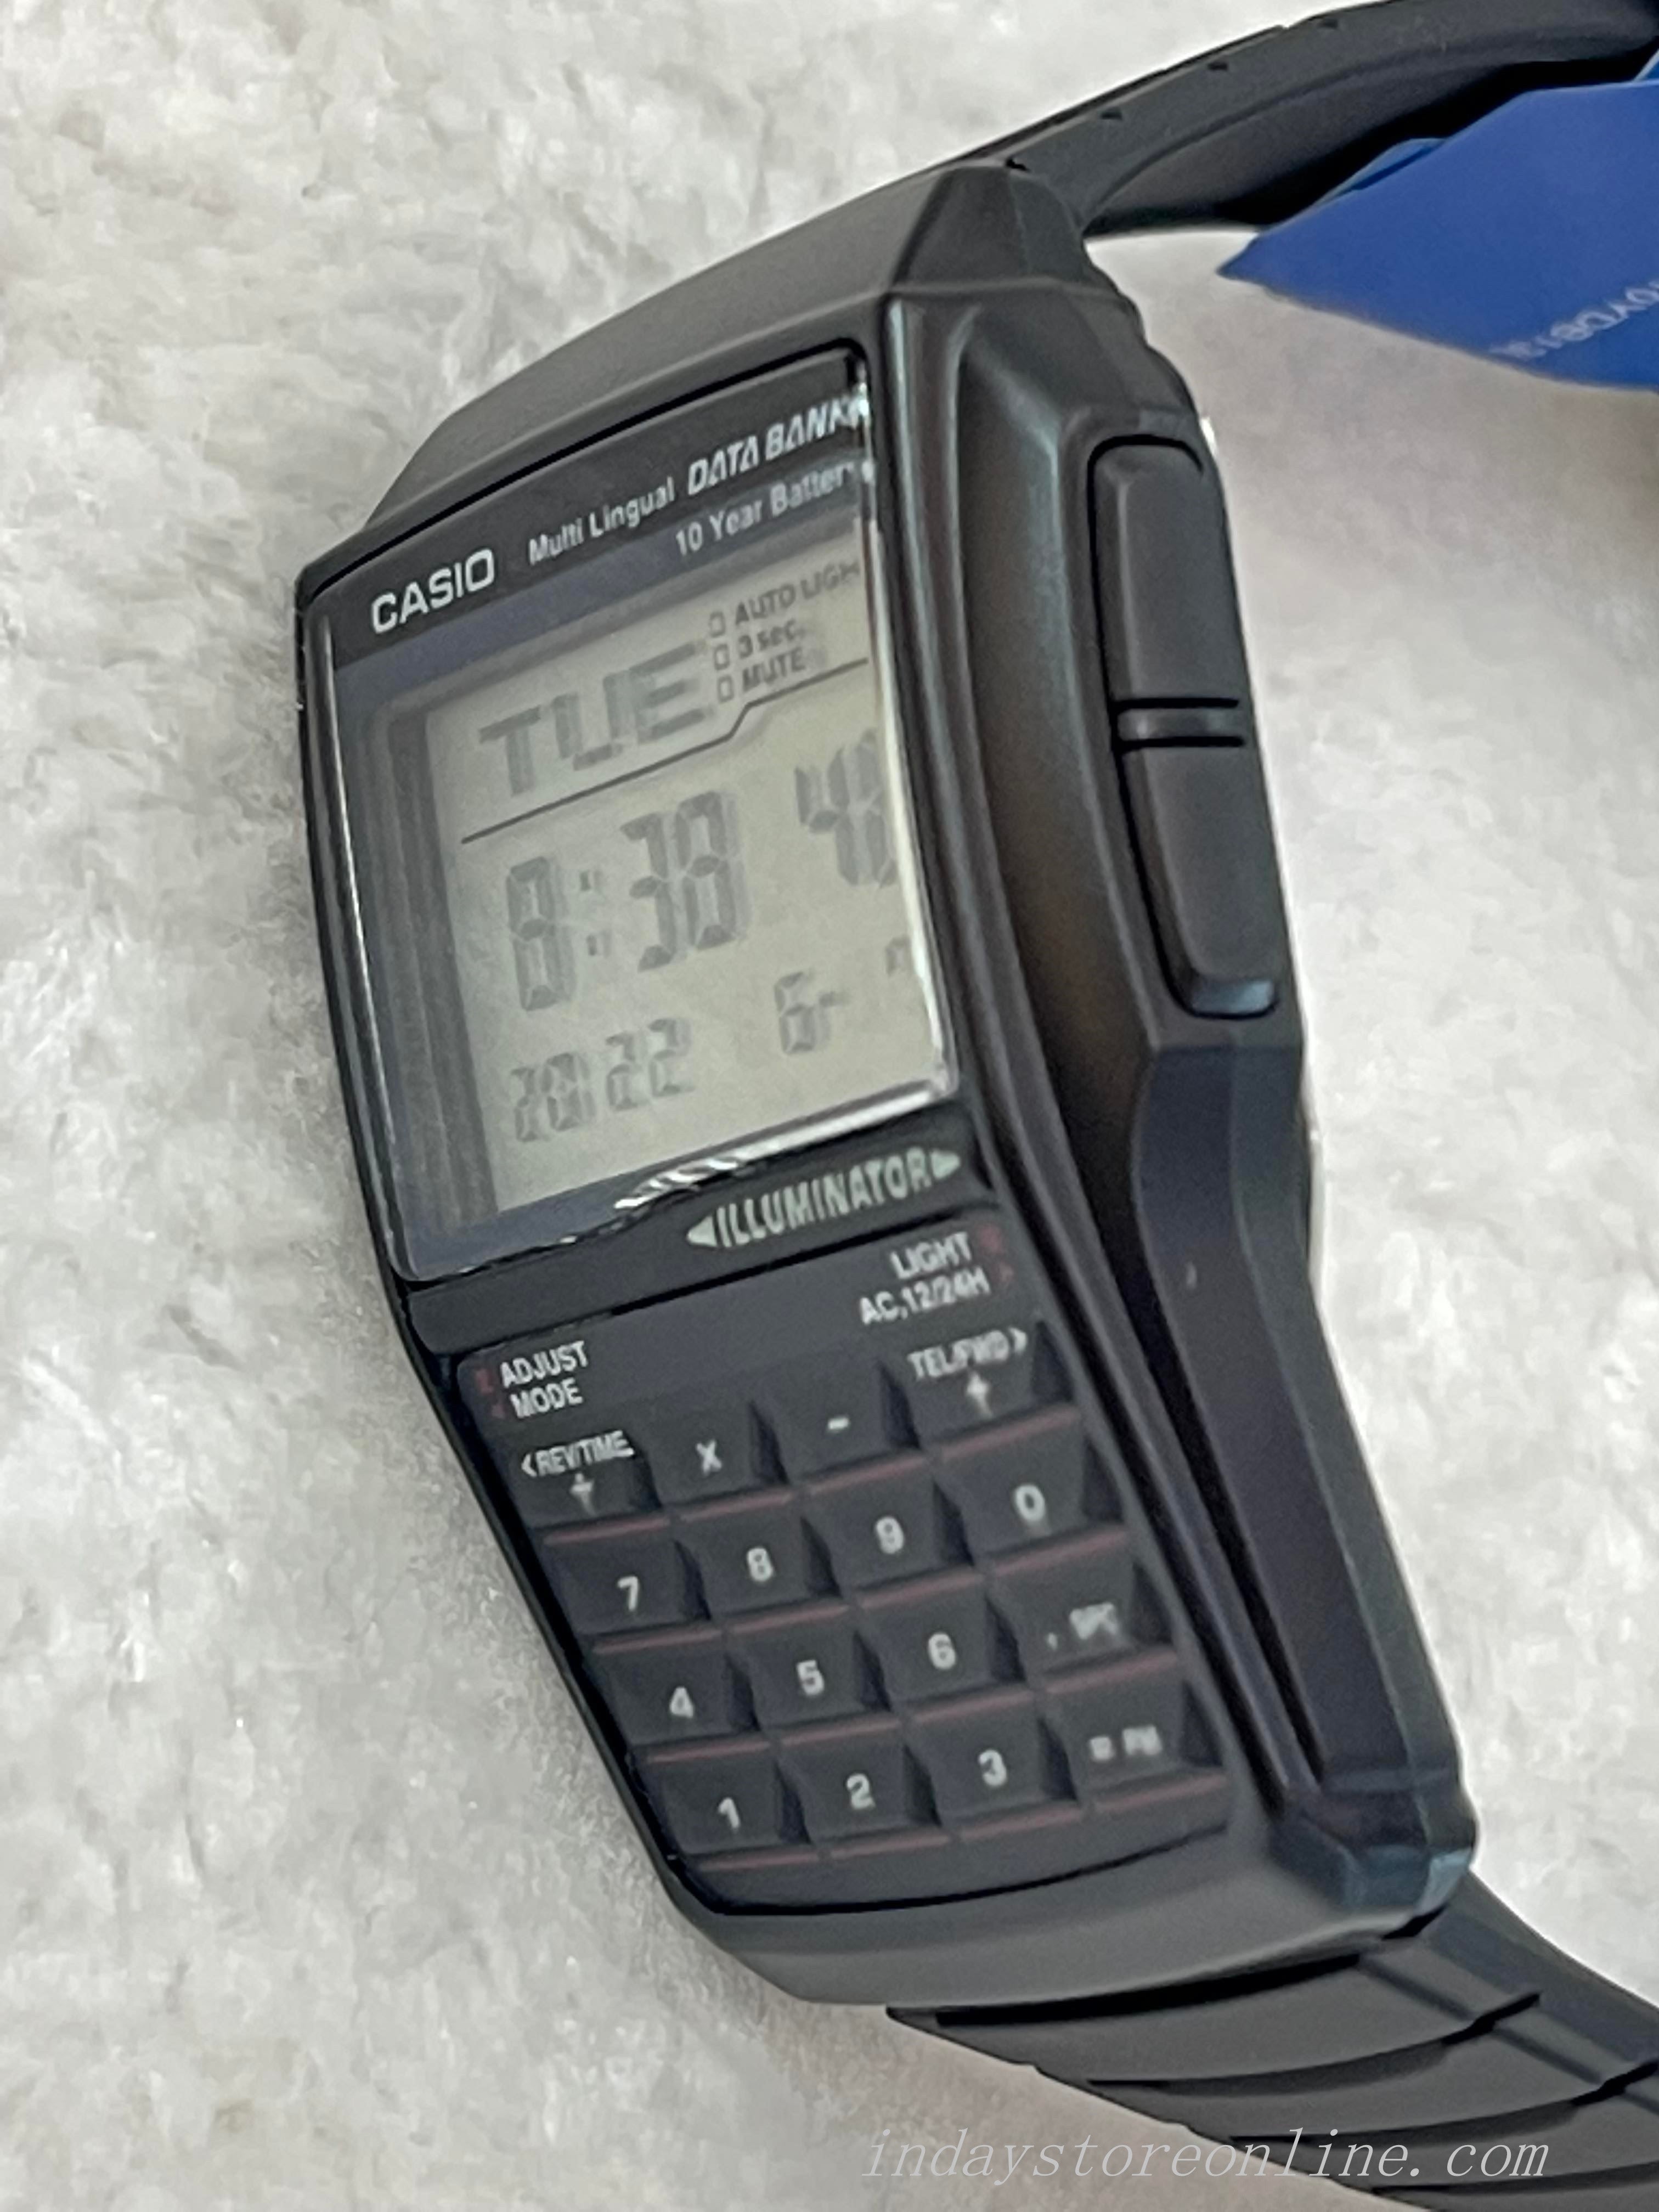 CASIO データバンク DBC-32 - 時計